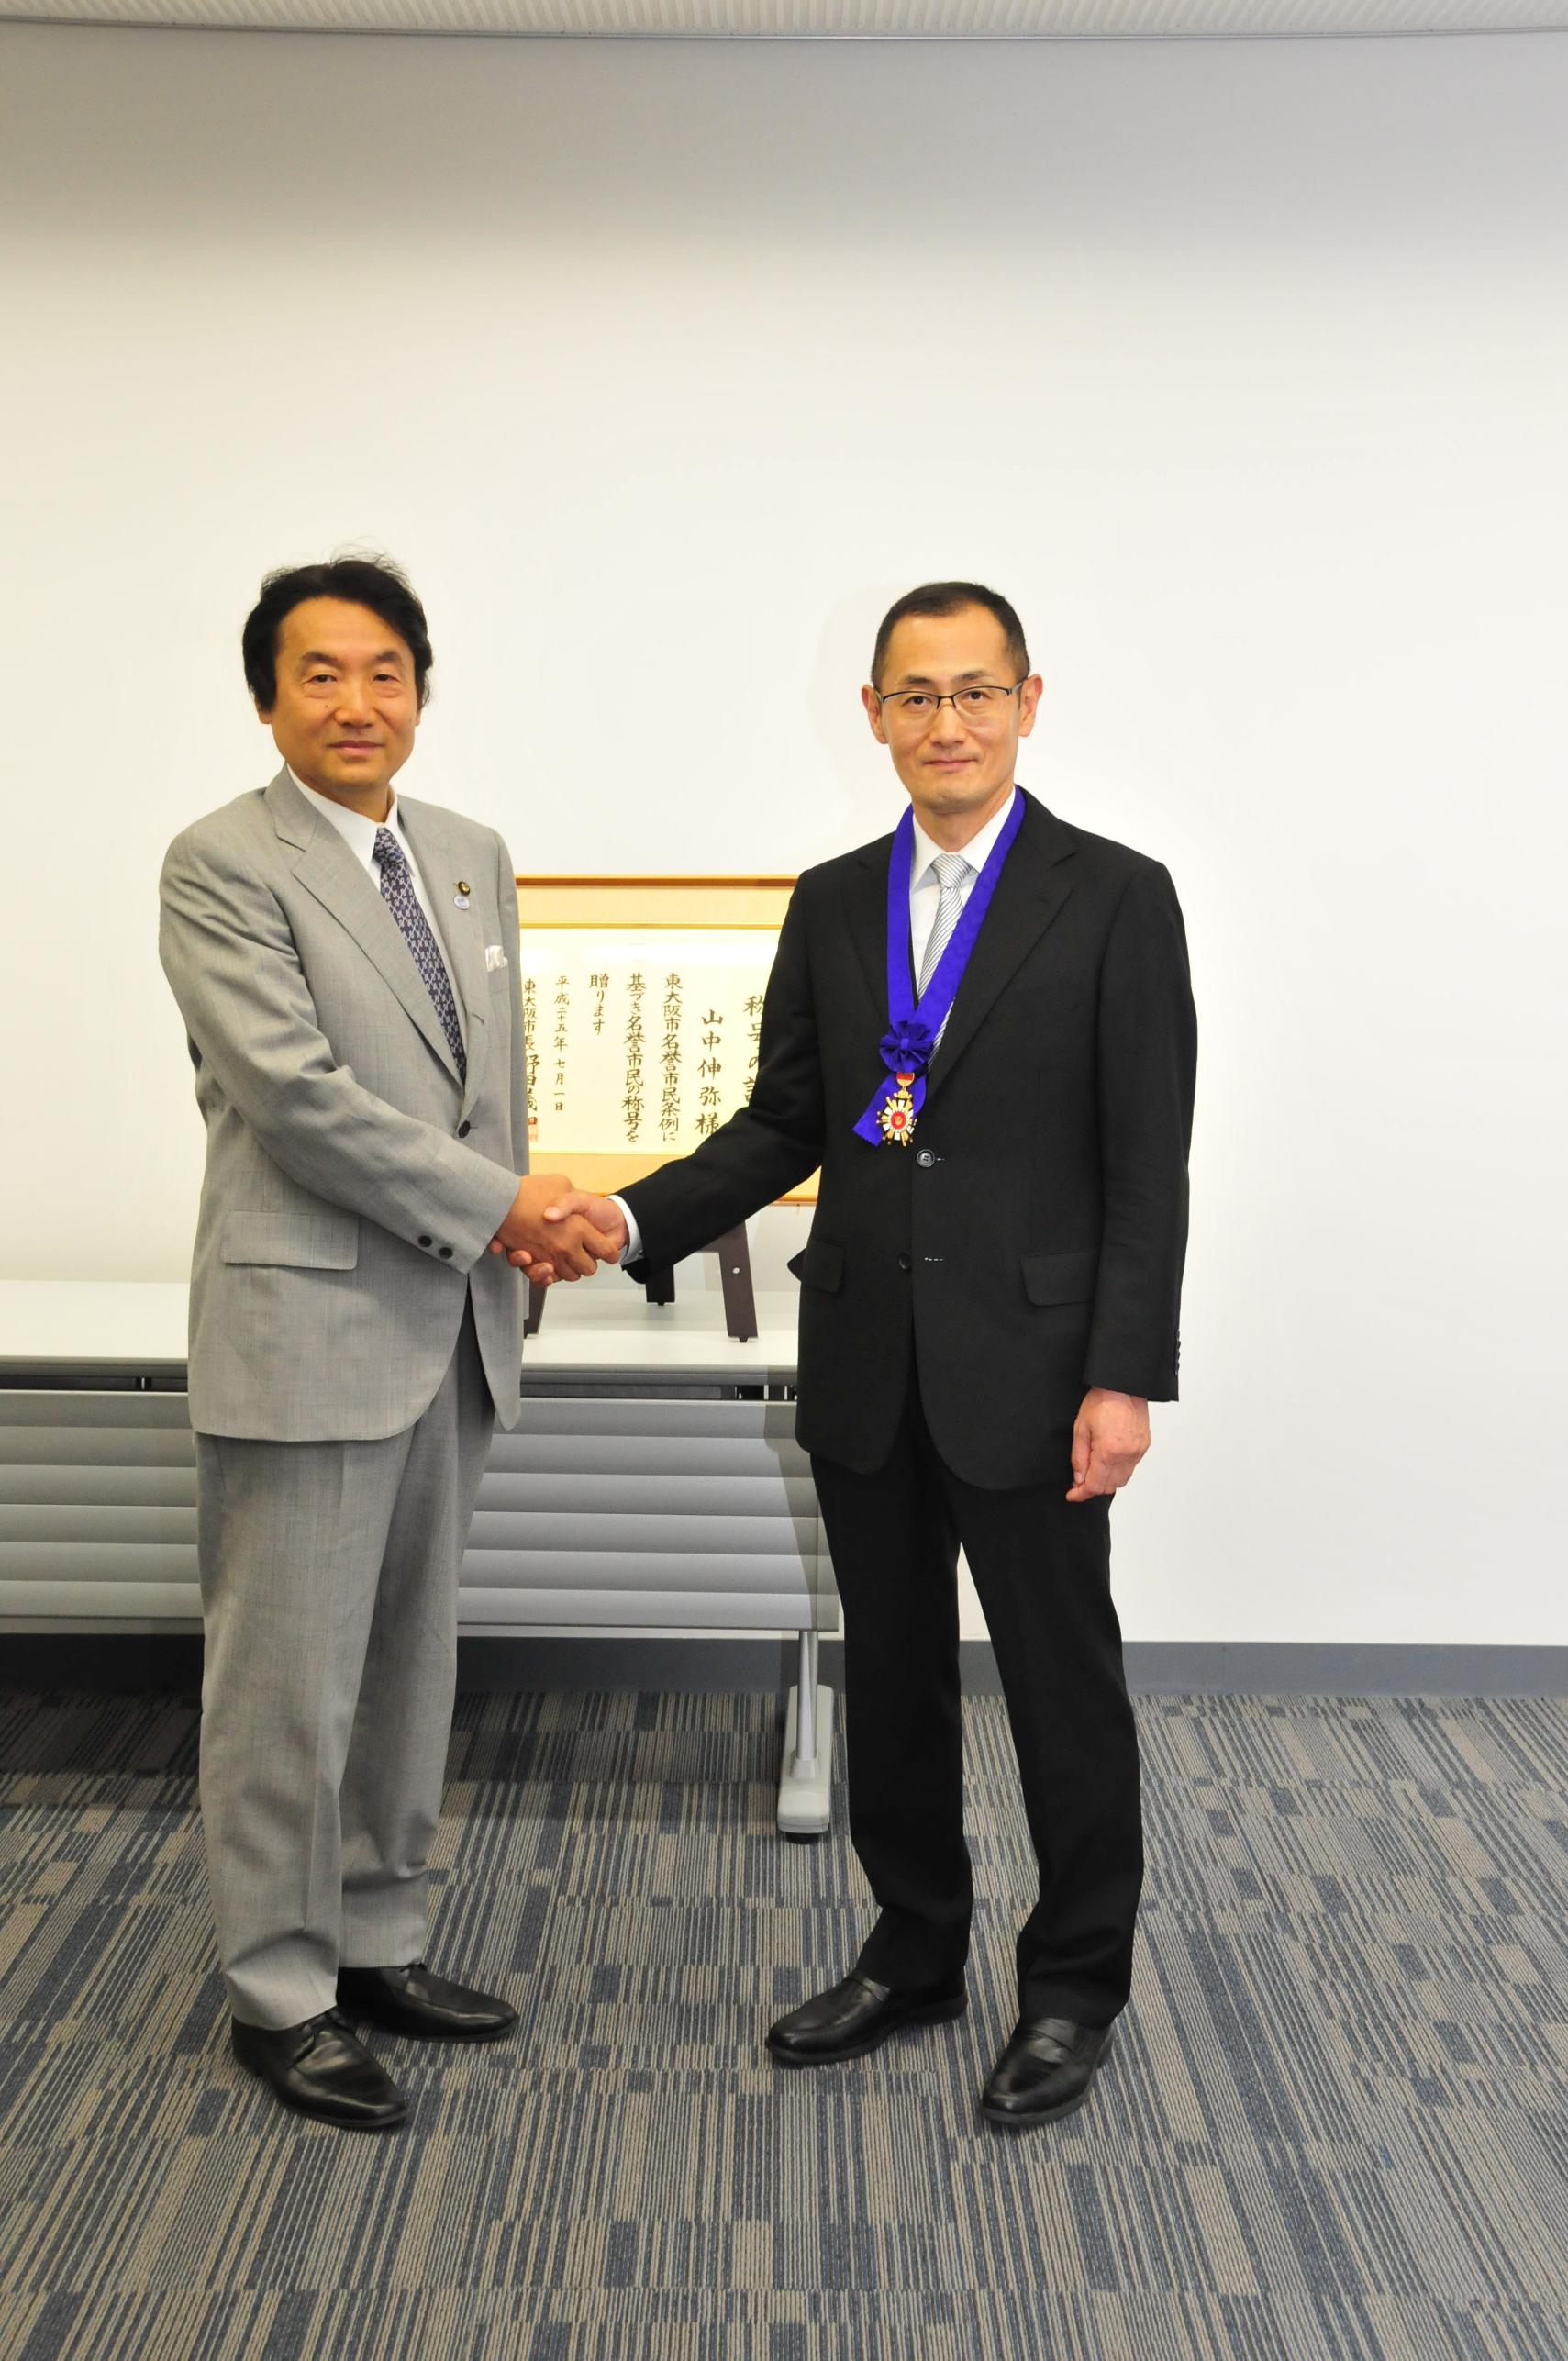 東大阪市名誉市民称号贈呈式の写真